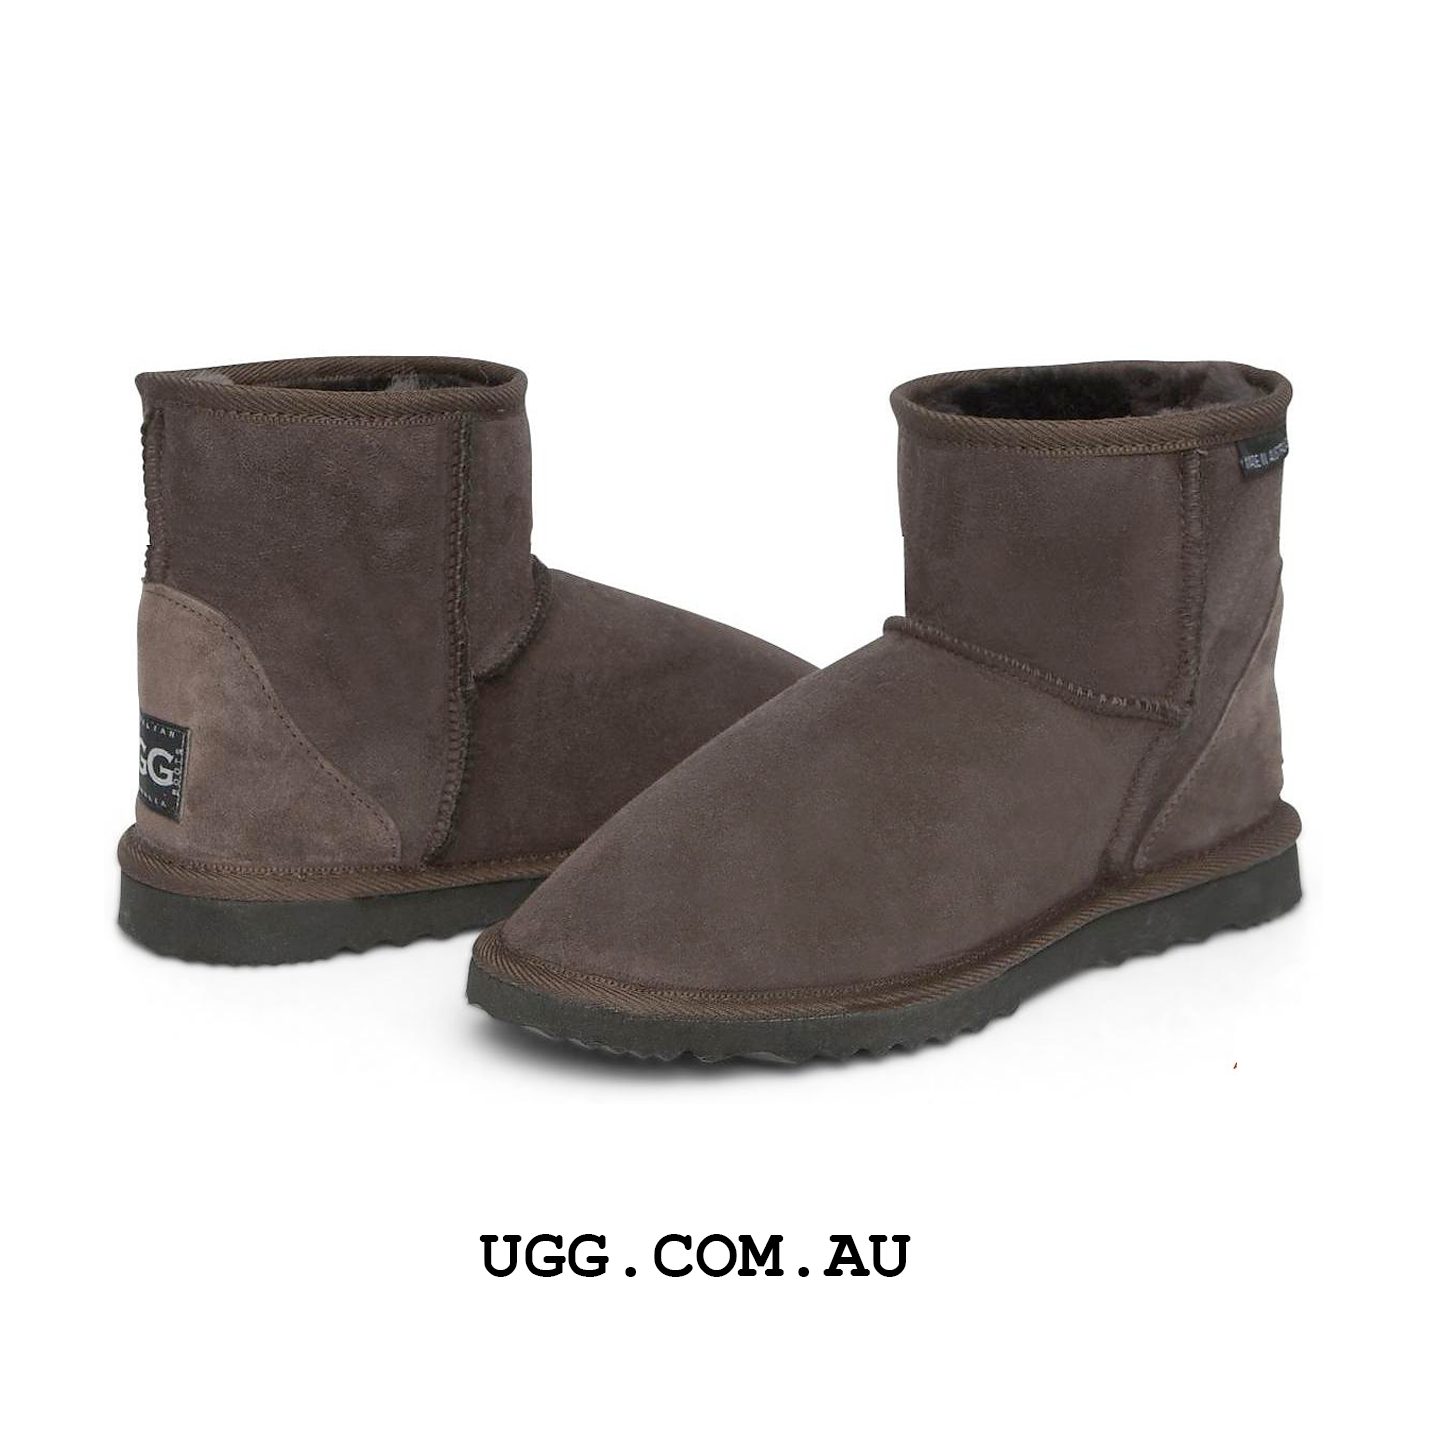 ULTRA Short UGG boots (Extra Large Sizes)